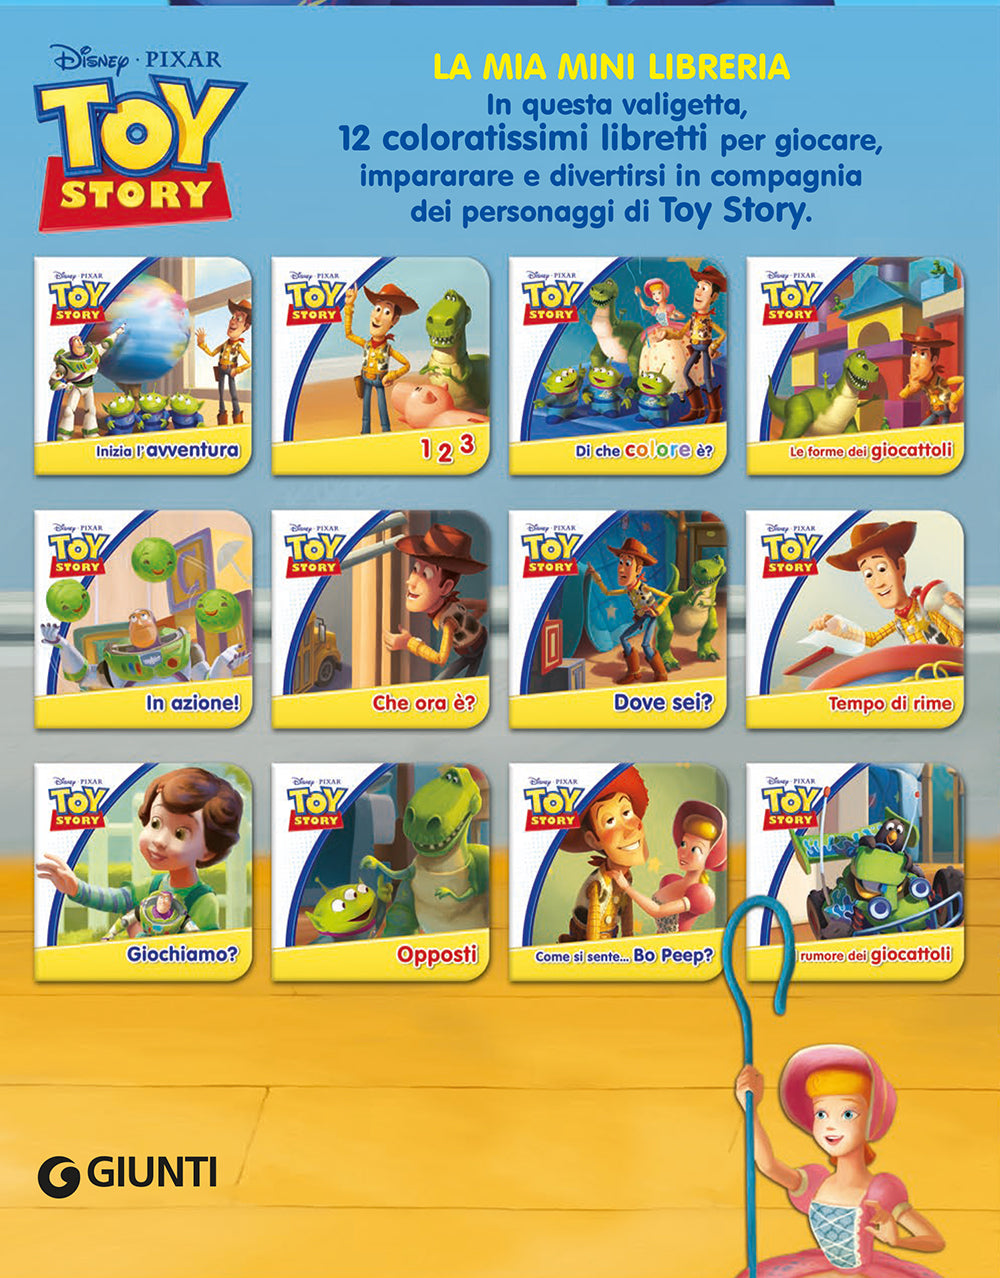 La mia mini libreria - Toy Story